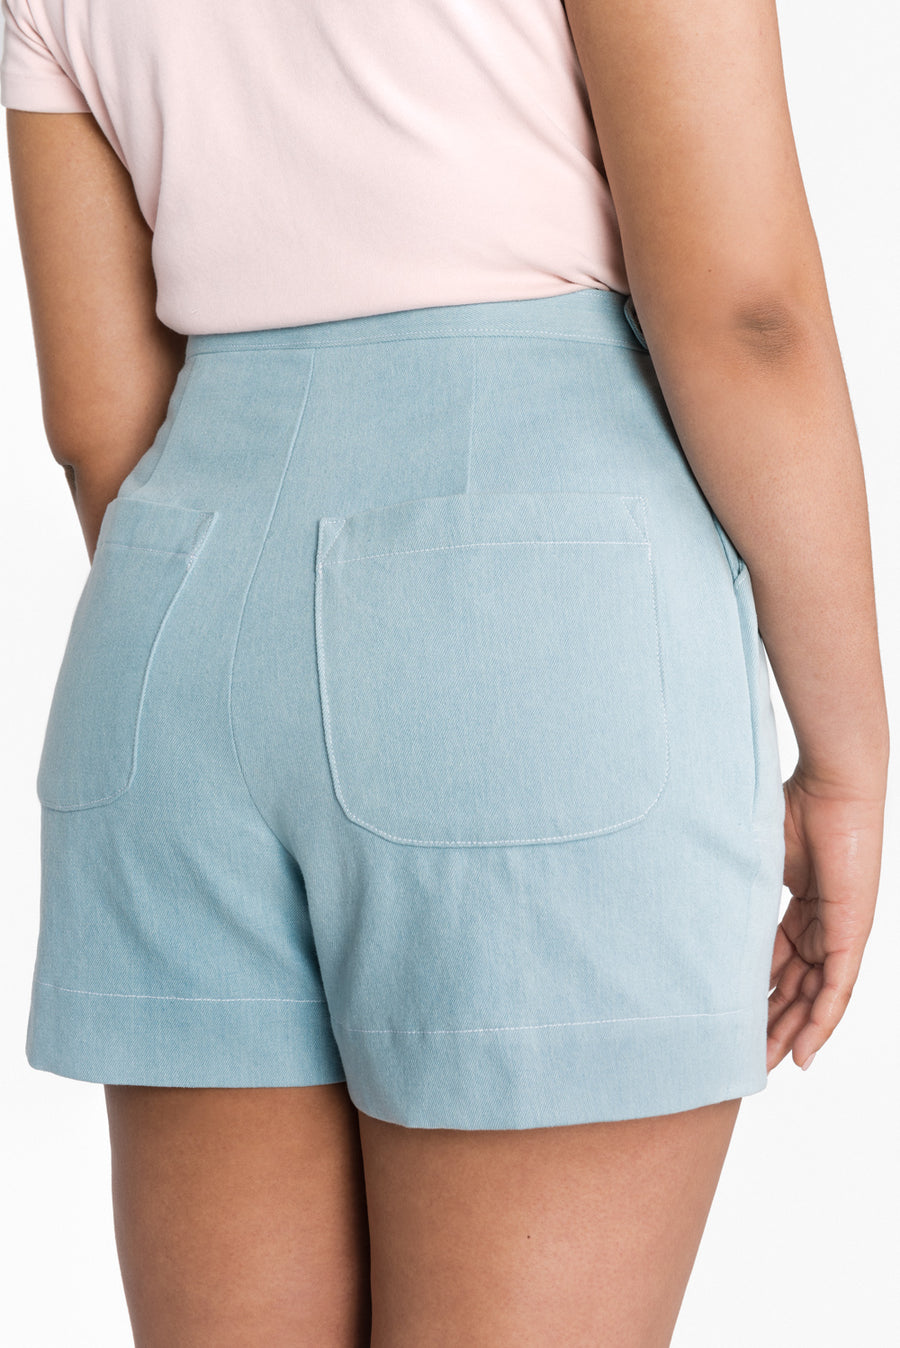 Jenny High-Waisted Shorts Pattern | Closet Core Patterns